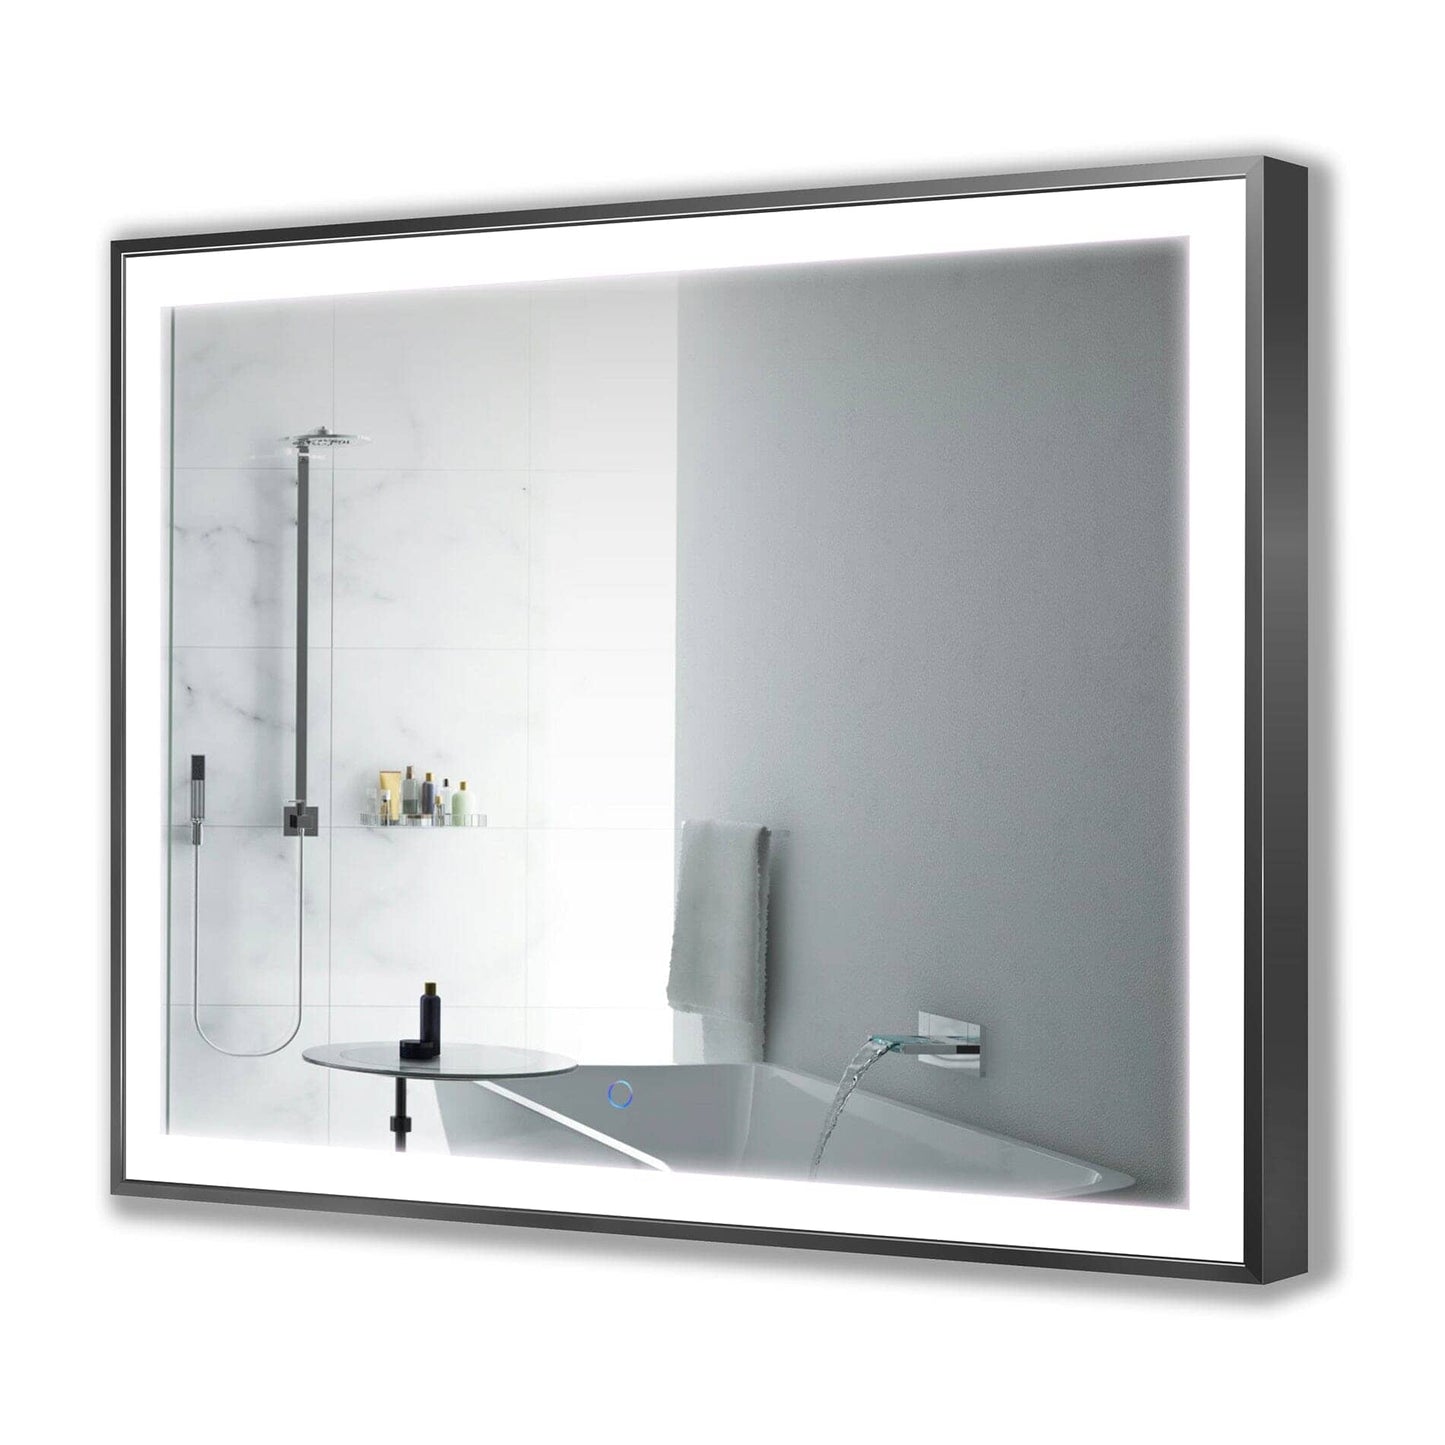 Lighted Bathroom Mirror - Krugg Soho Matte Black - SOHO4836B